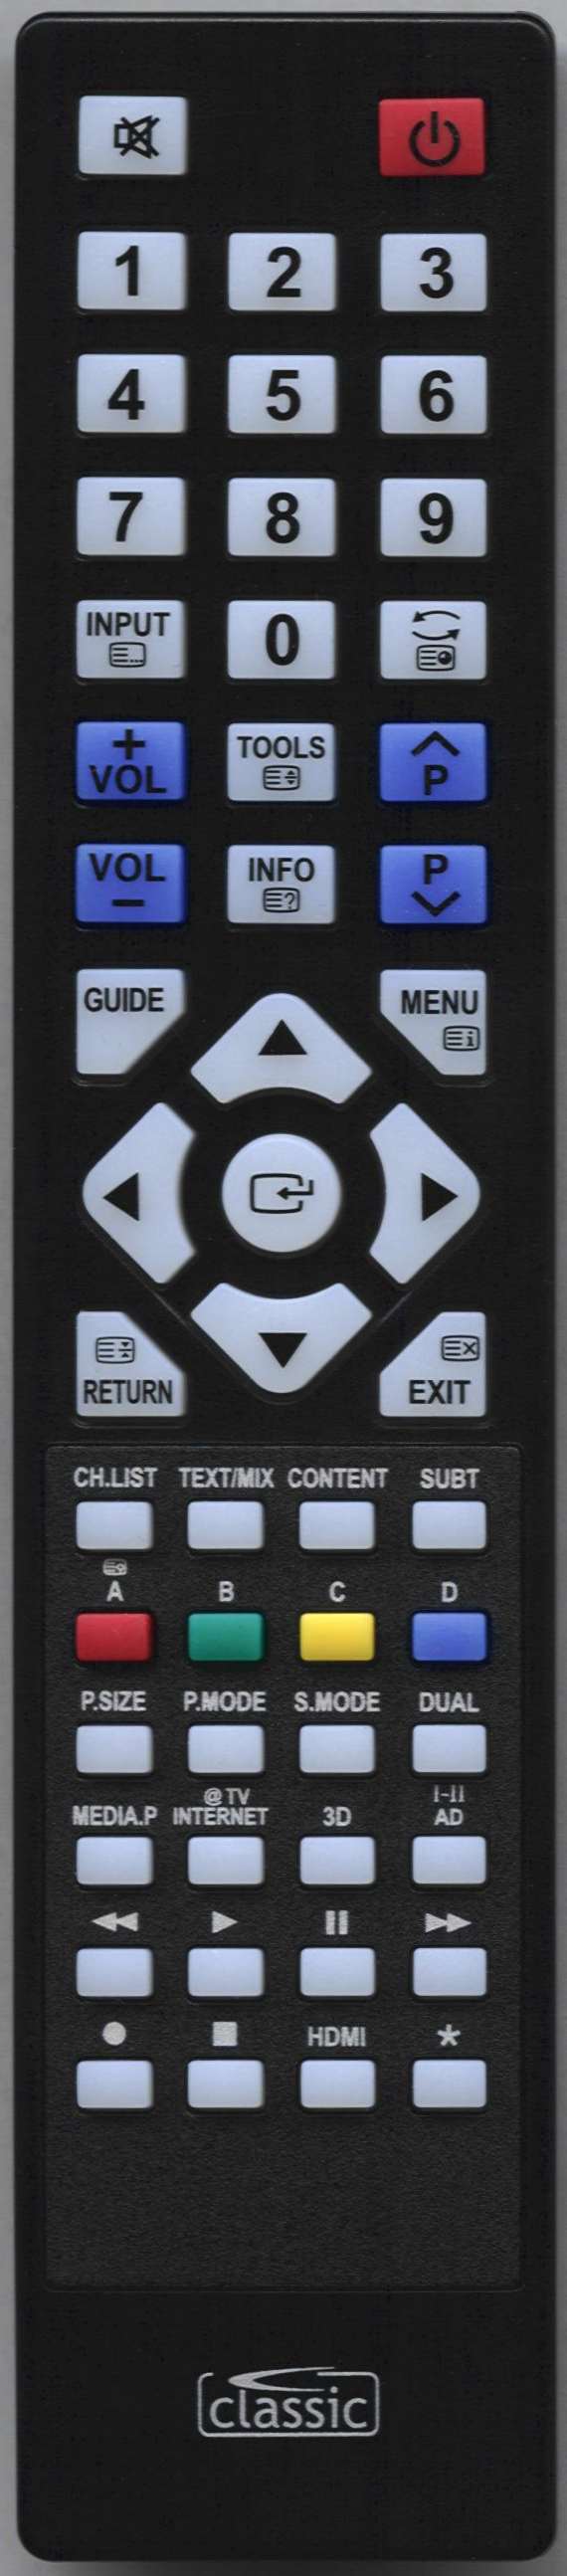 SAMSUNG UE37C6800USXXN Remote Control